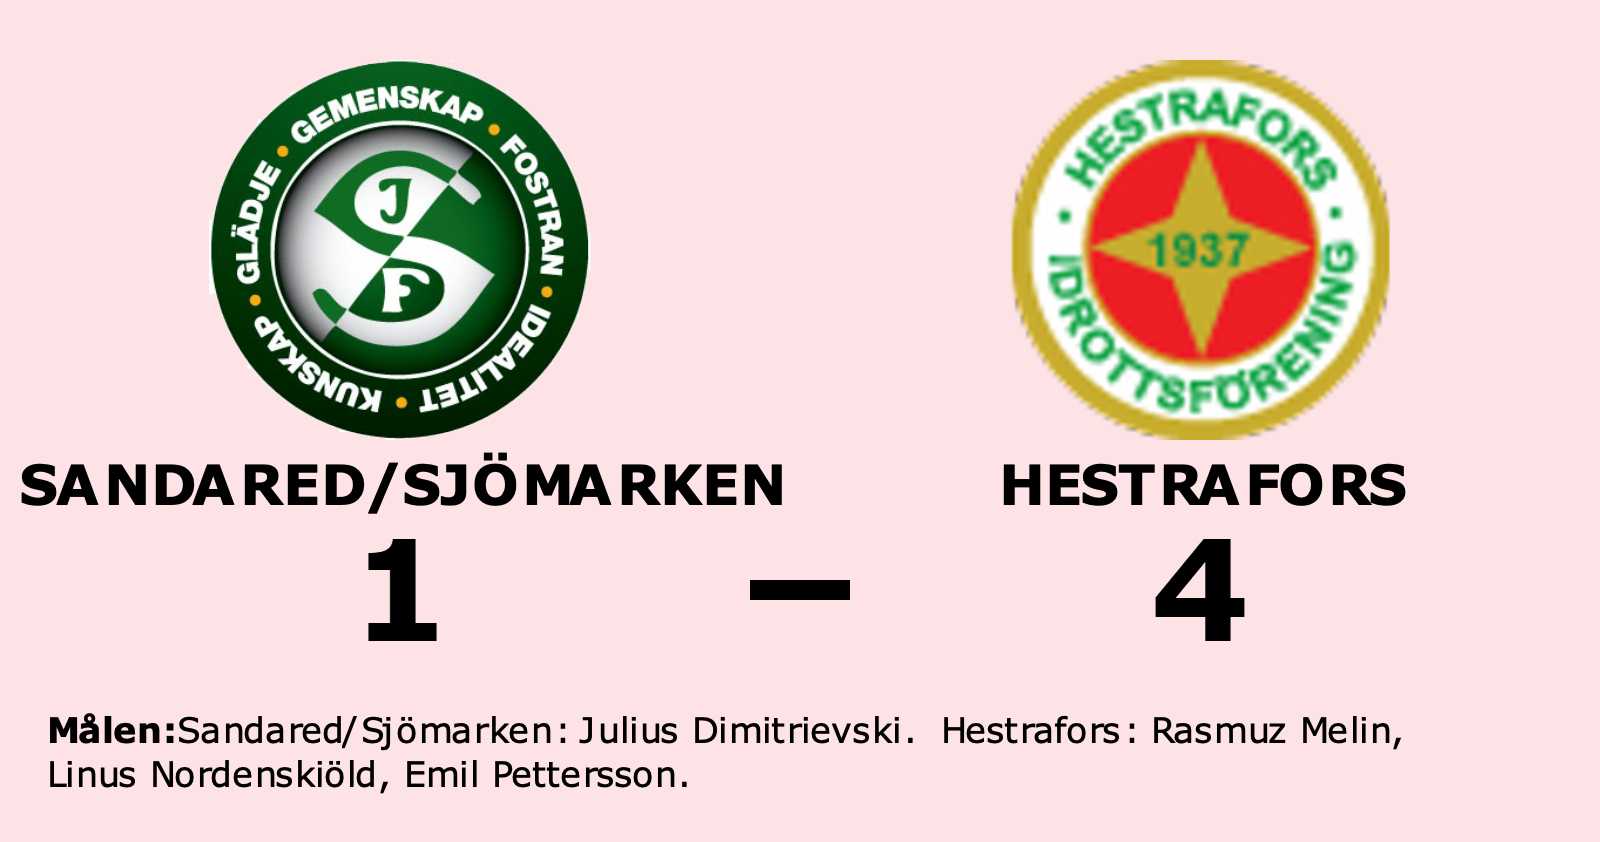 Hestrafors vann mot Sandared/Sjömarken – trots underläge i halvtid